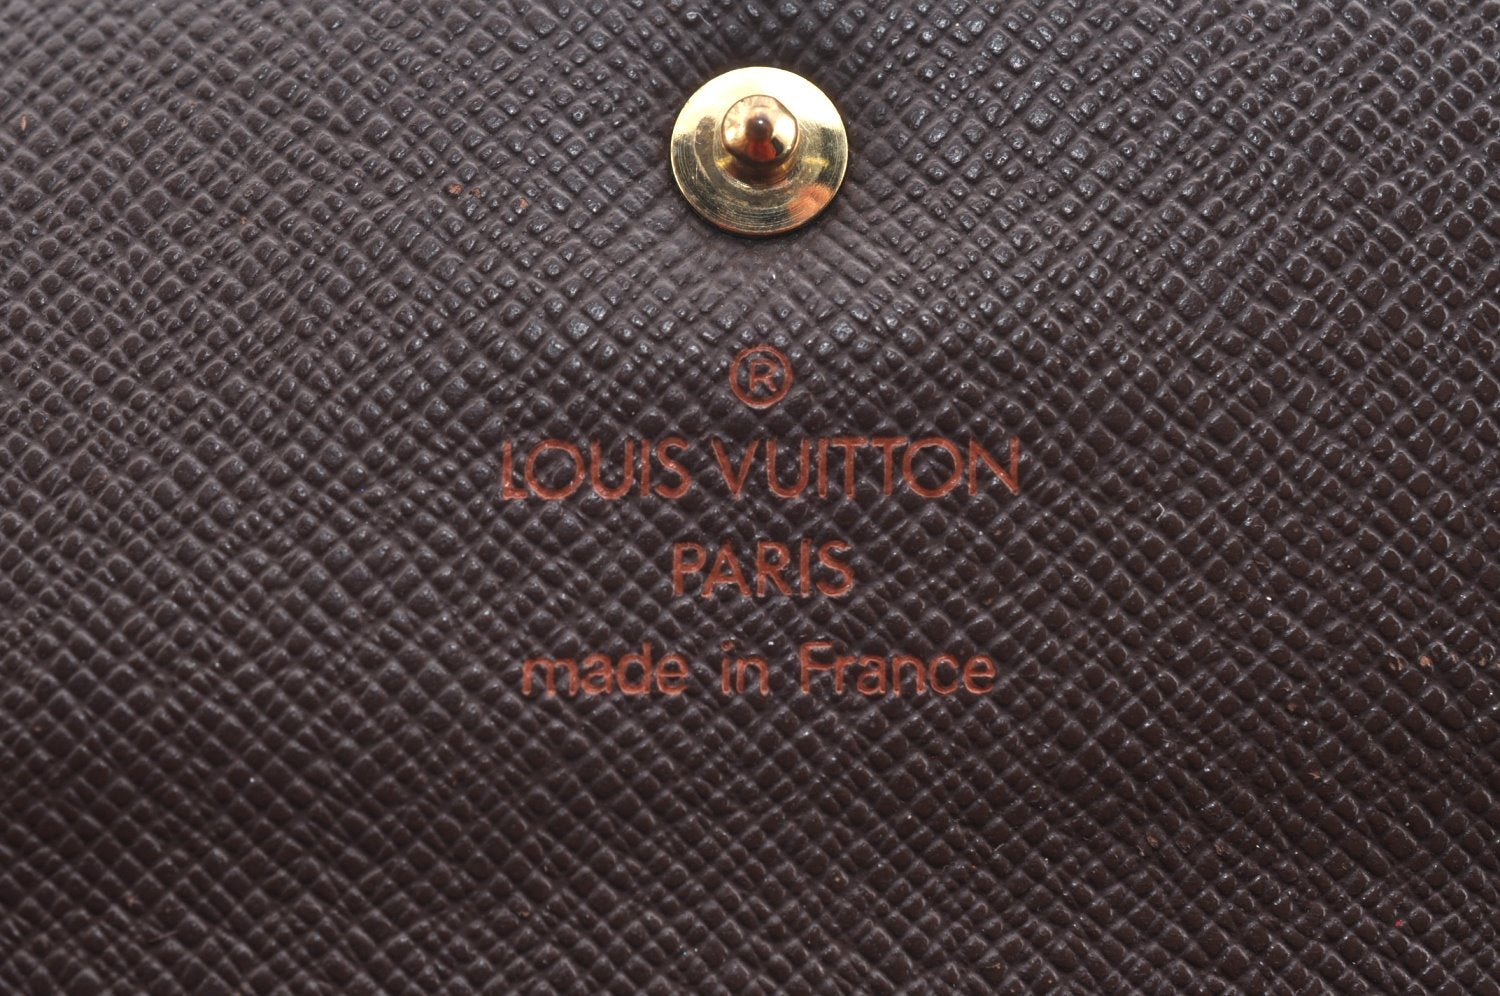 Authentic Louis Vuitton Damier Porte Tresor Etui Papier Wallet N61202 LV K4333